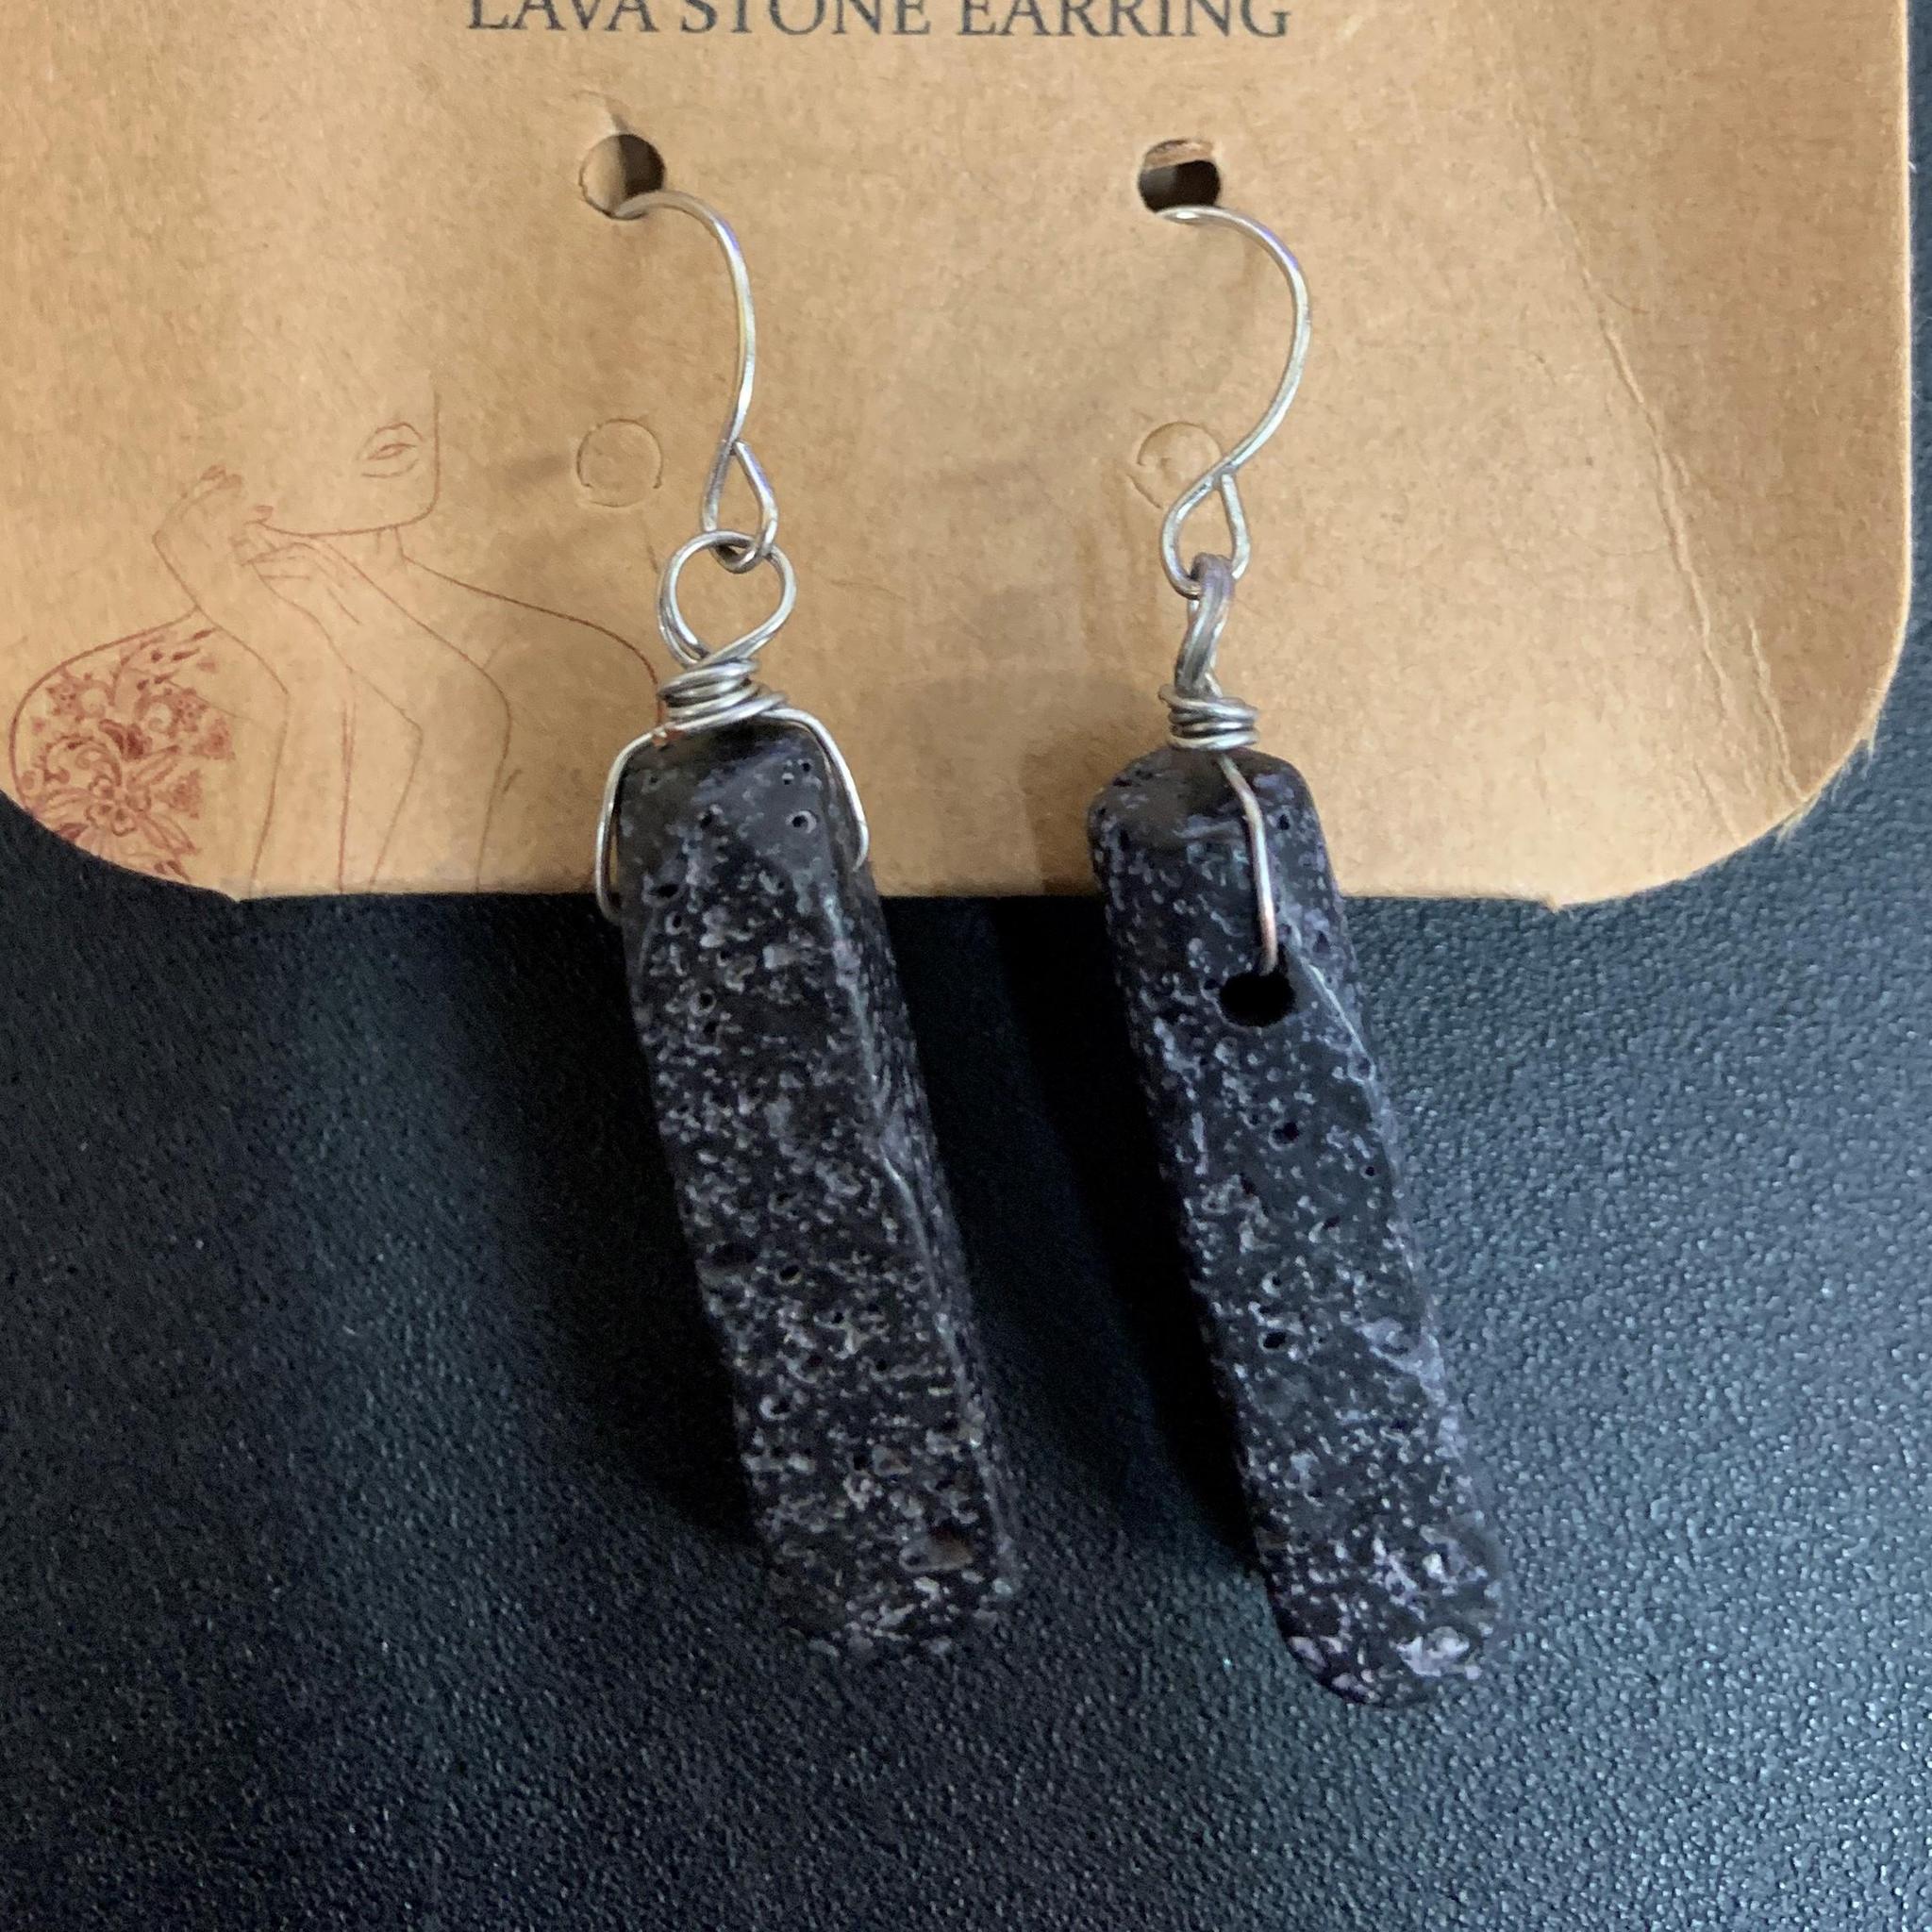 Lava Stone Earrings - Regular